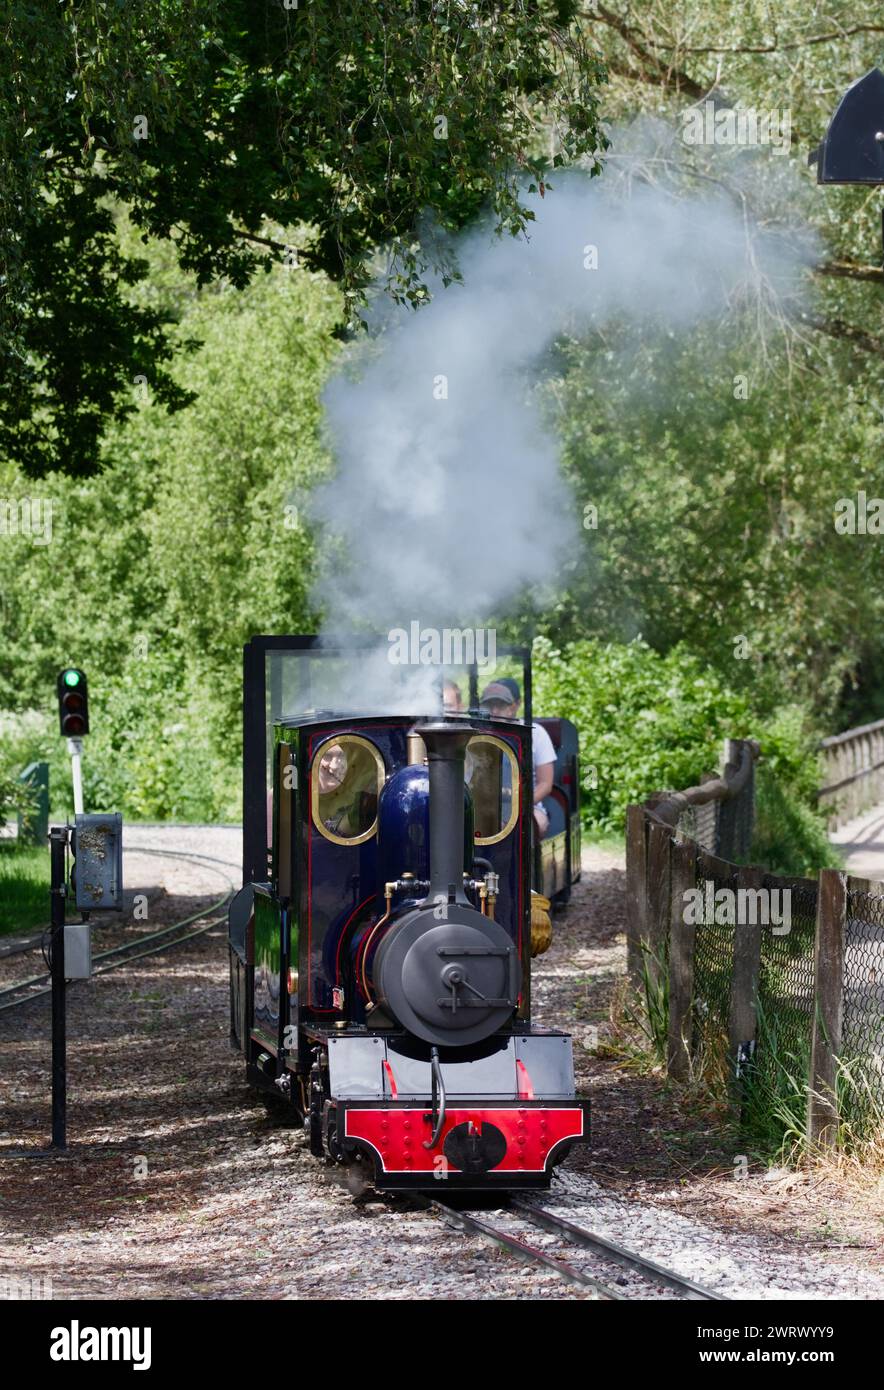 Vapeur provenant de la chaudière d'Une locomotive à vapeur à voie étroite de 7 1/4 pouces, Perseus, au Moors Valley Railway, Moors Valley, Royaume-Uni Banque D'Images